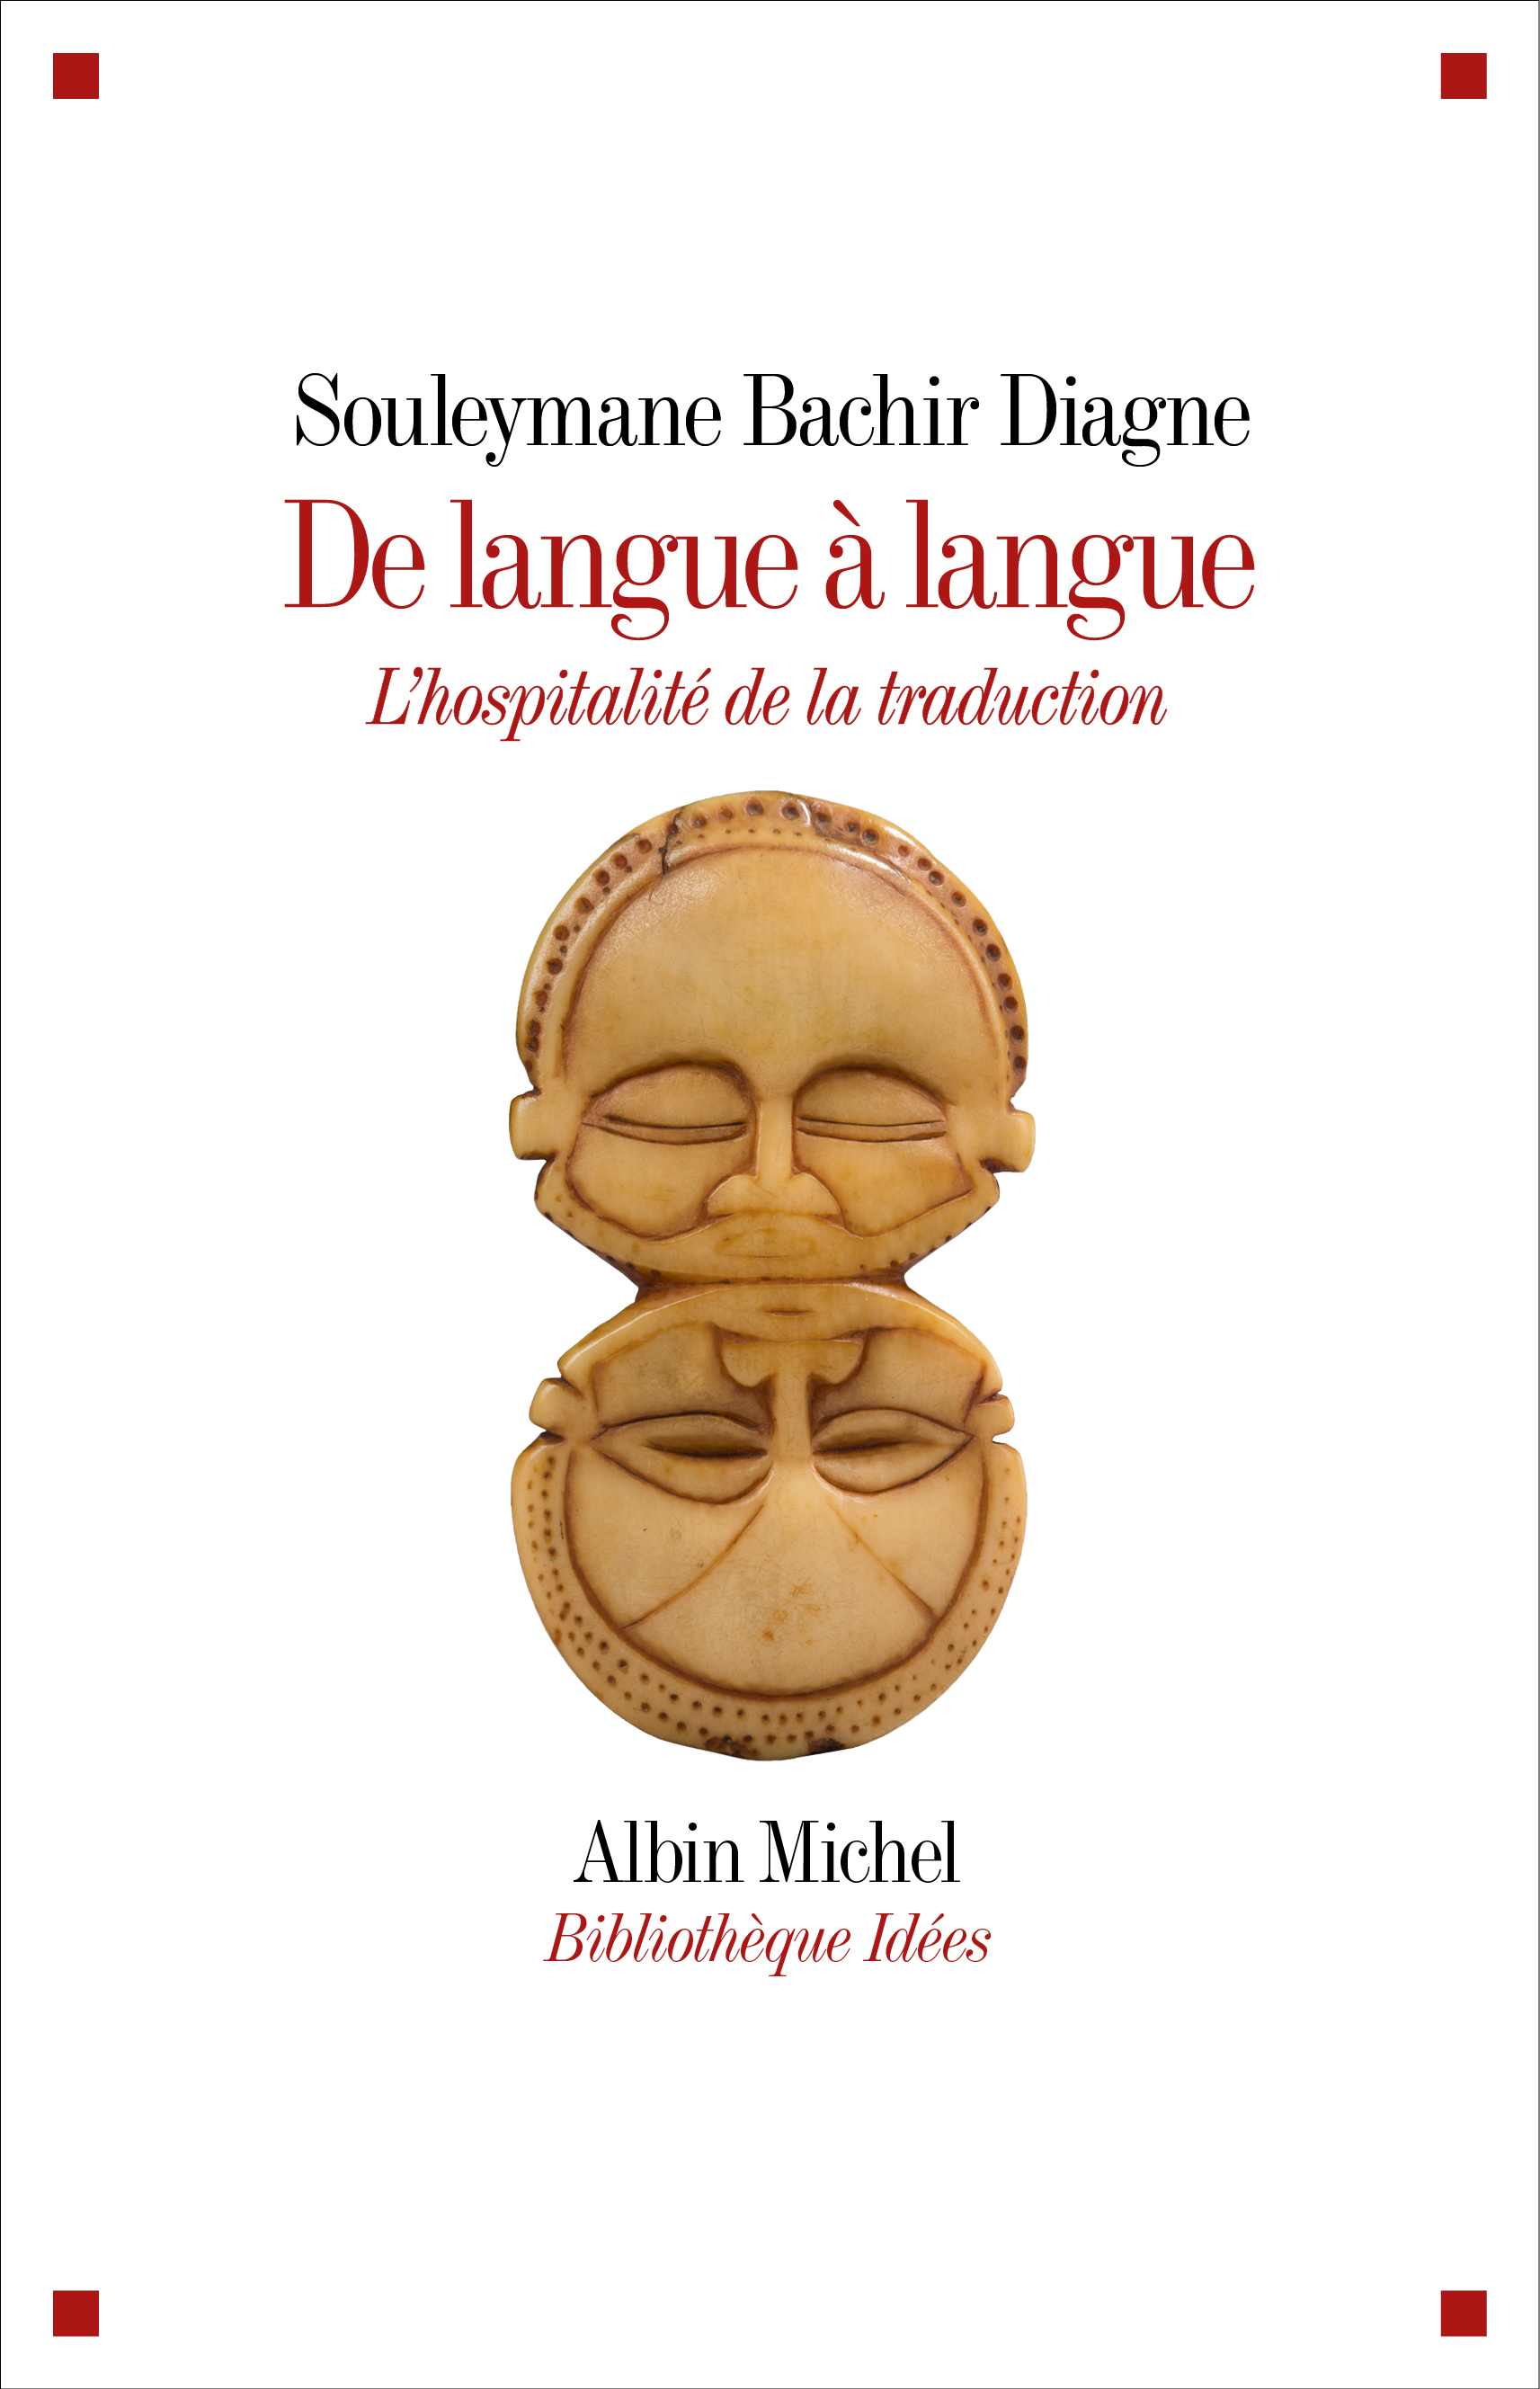 Couverture du livre De langue à langue